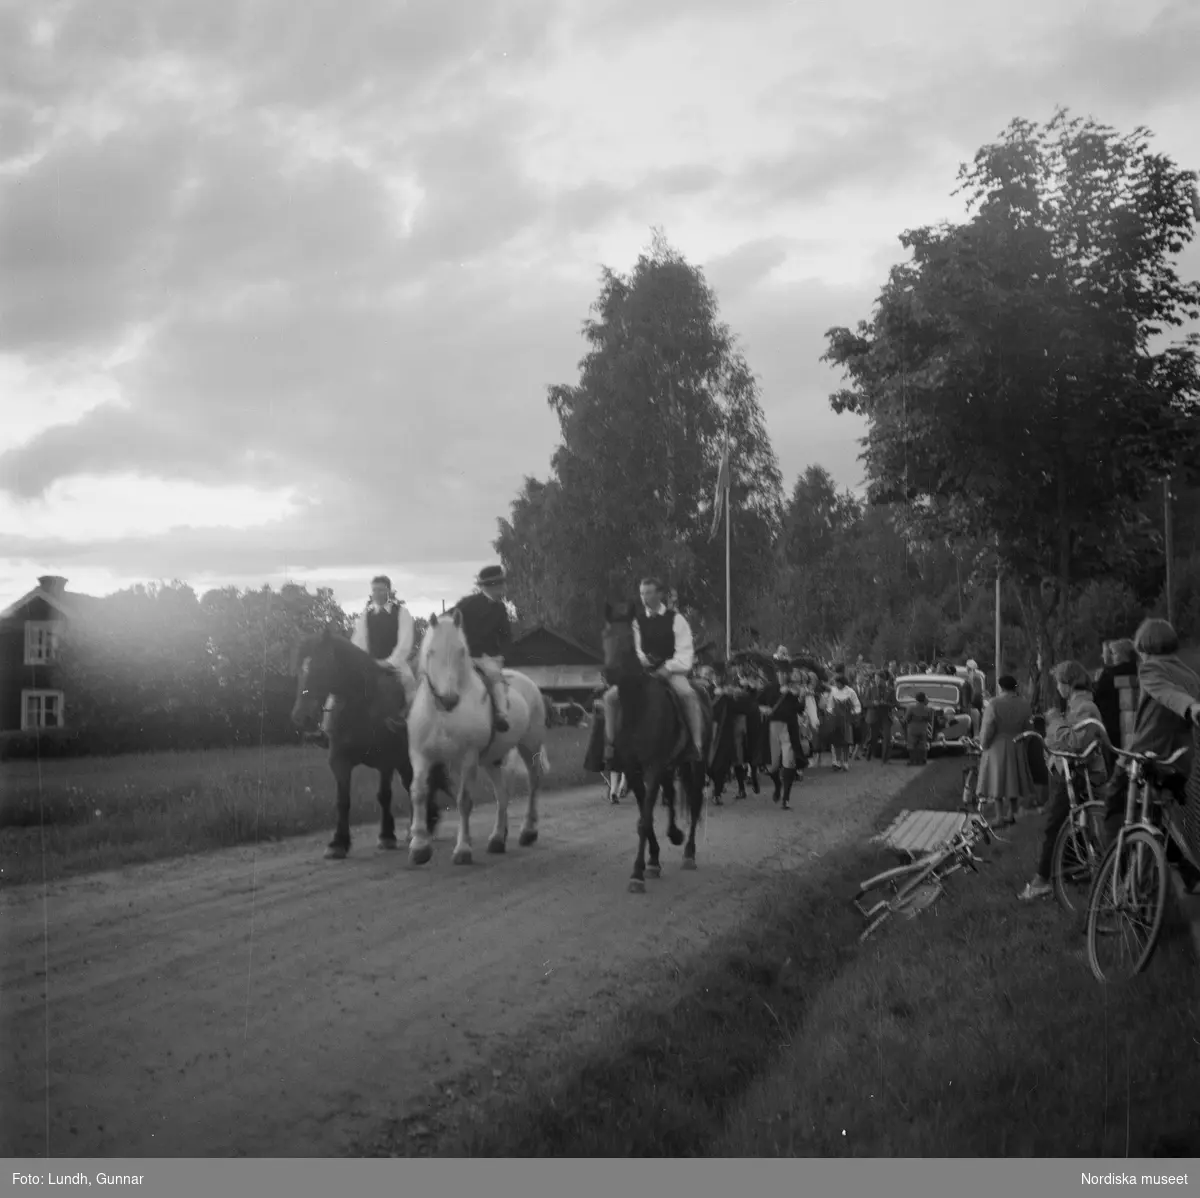 Motiv: (ingen anteckning) ;
En kvinna och två män spelar boccia, porträtt av en kvinna i folkdräkt, en folksamling står vid en gärsgård, tre män i folkdräkt rider på hästar framför män som spelar fiol och kvinnor i folkdräkt som går på en väg "Midsommartåget till Tibble", en kvinna i folkdräkt rider på en häst som drar en vagn med barn, kvinnor och män pryder en midsommarstång med lövade ringar.dju